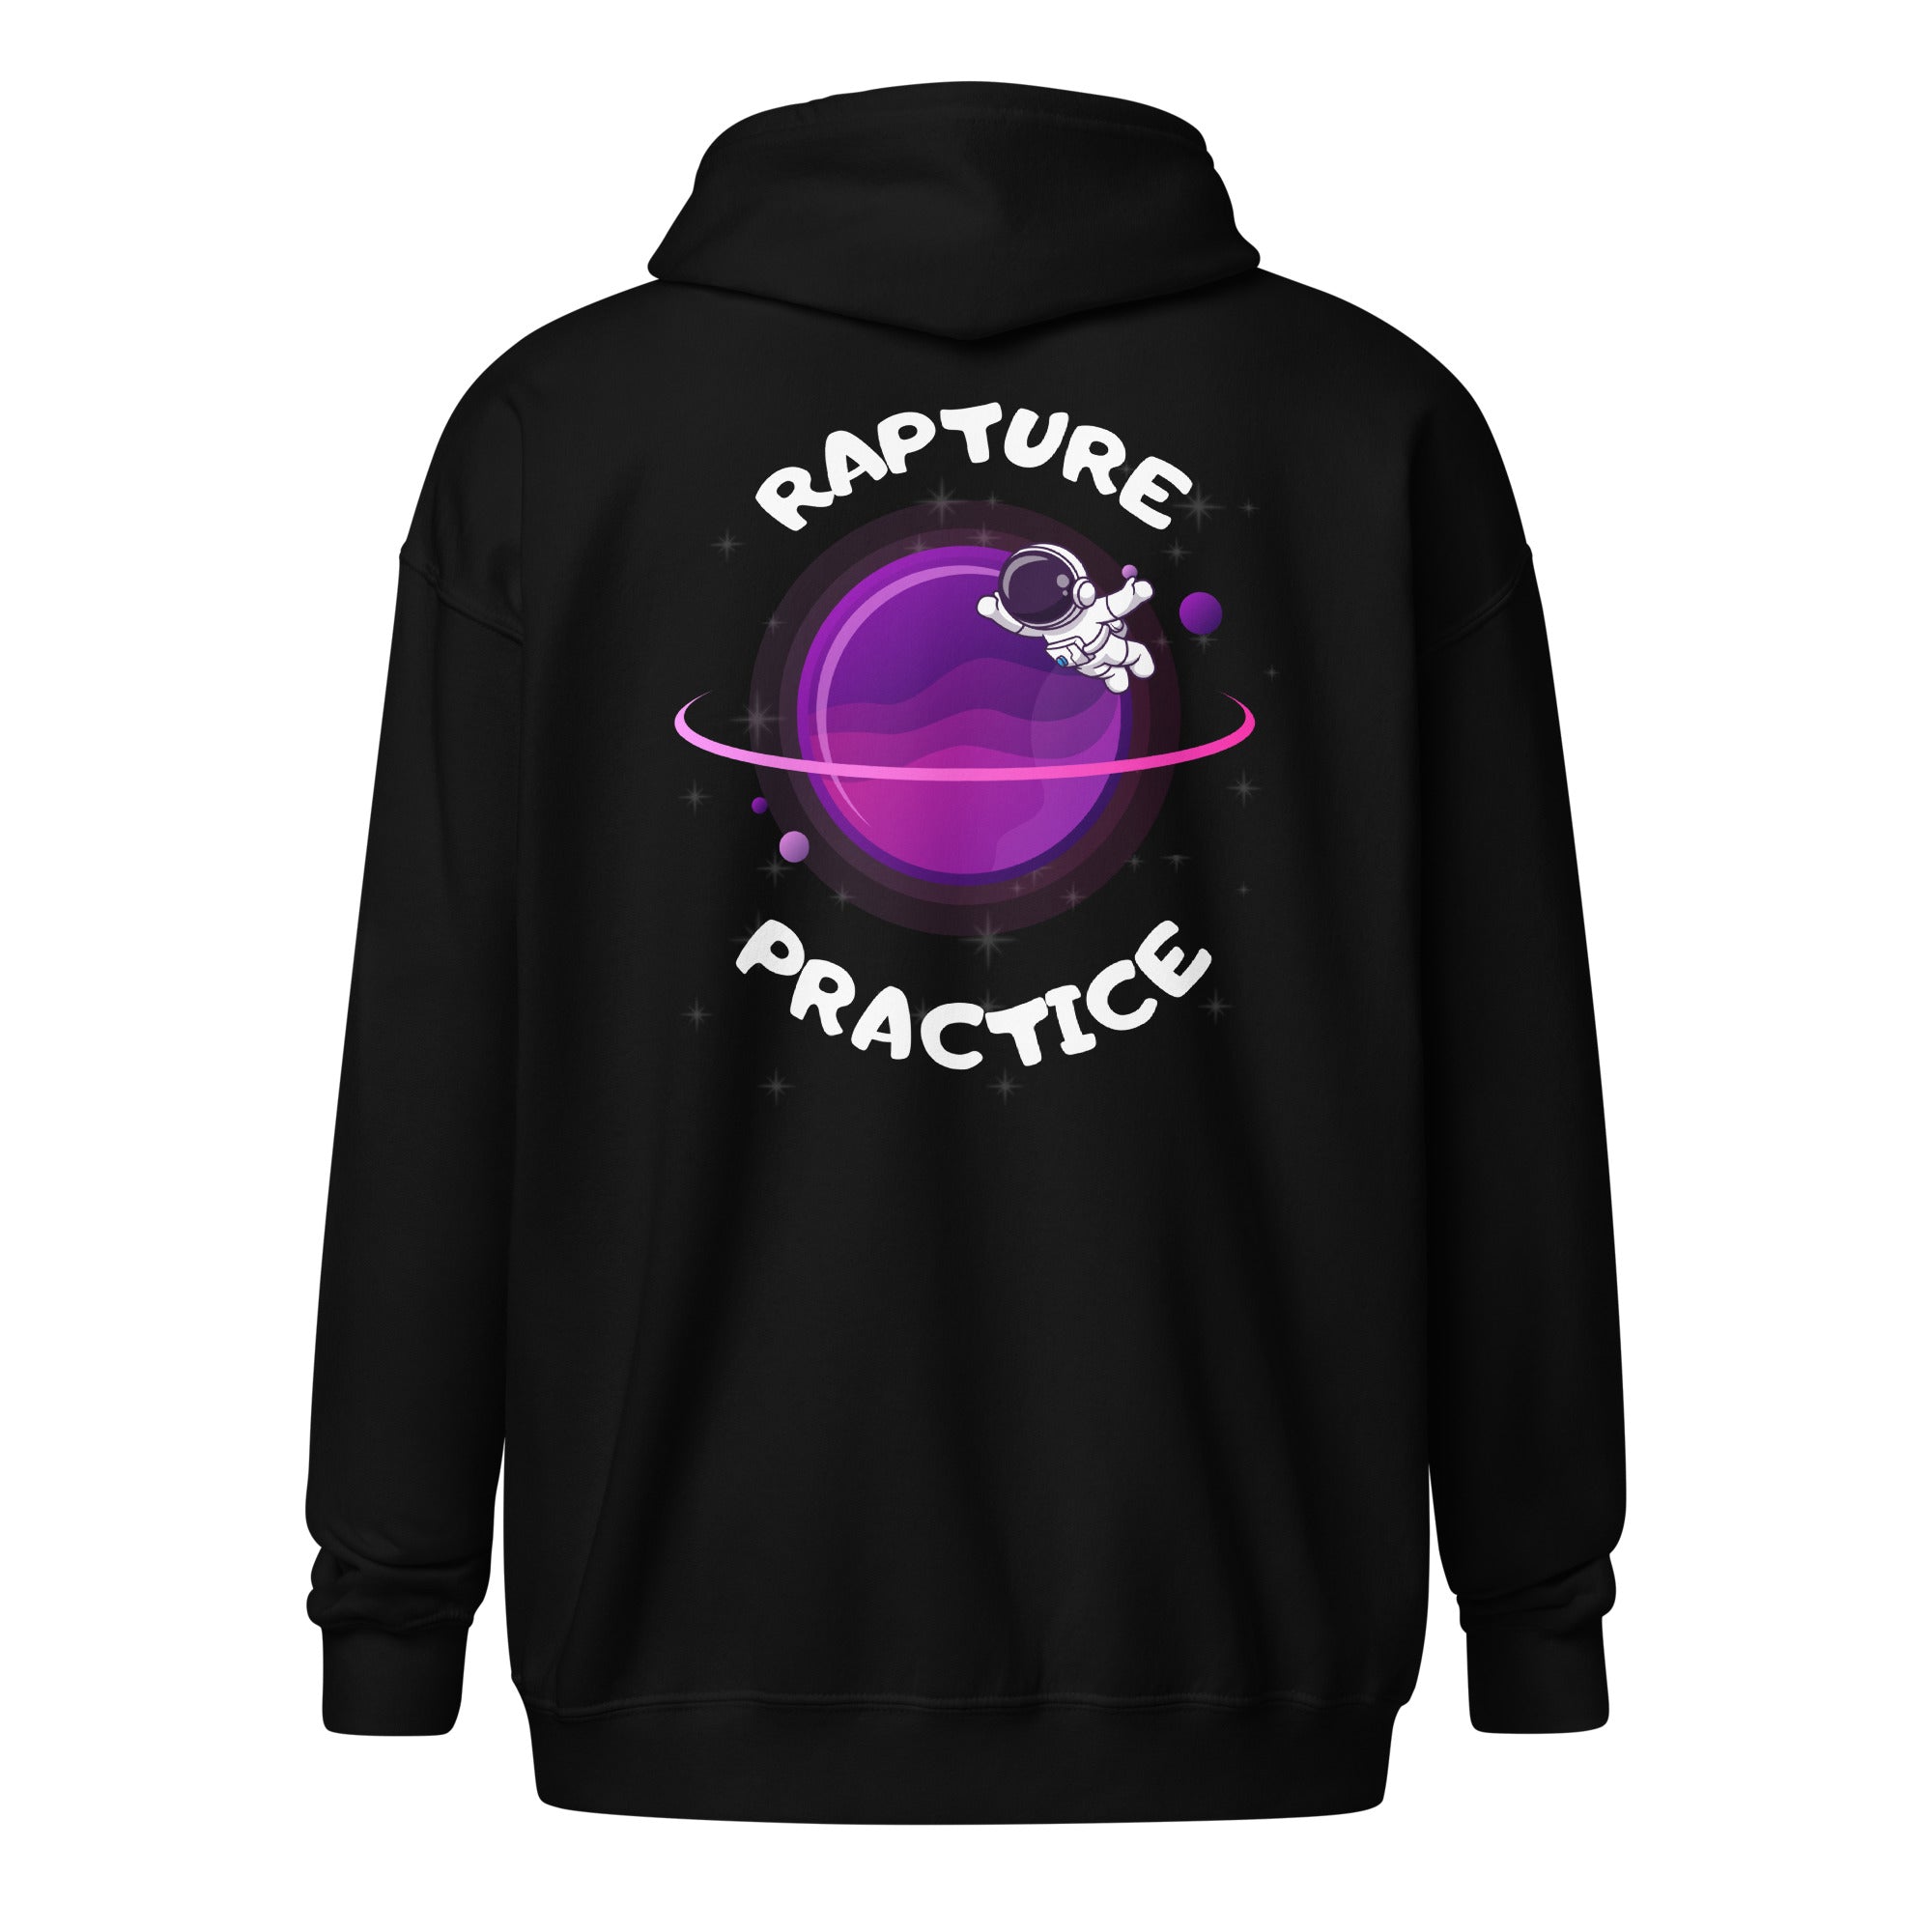 Rapture Practice Unisex heavy blend zip hoodie